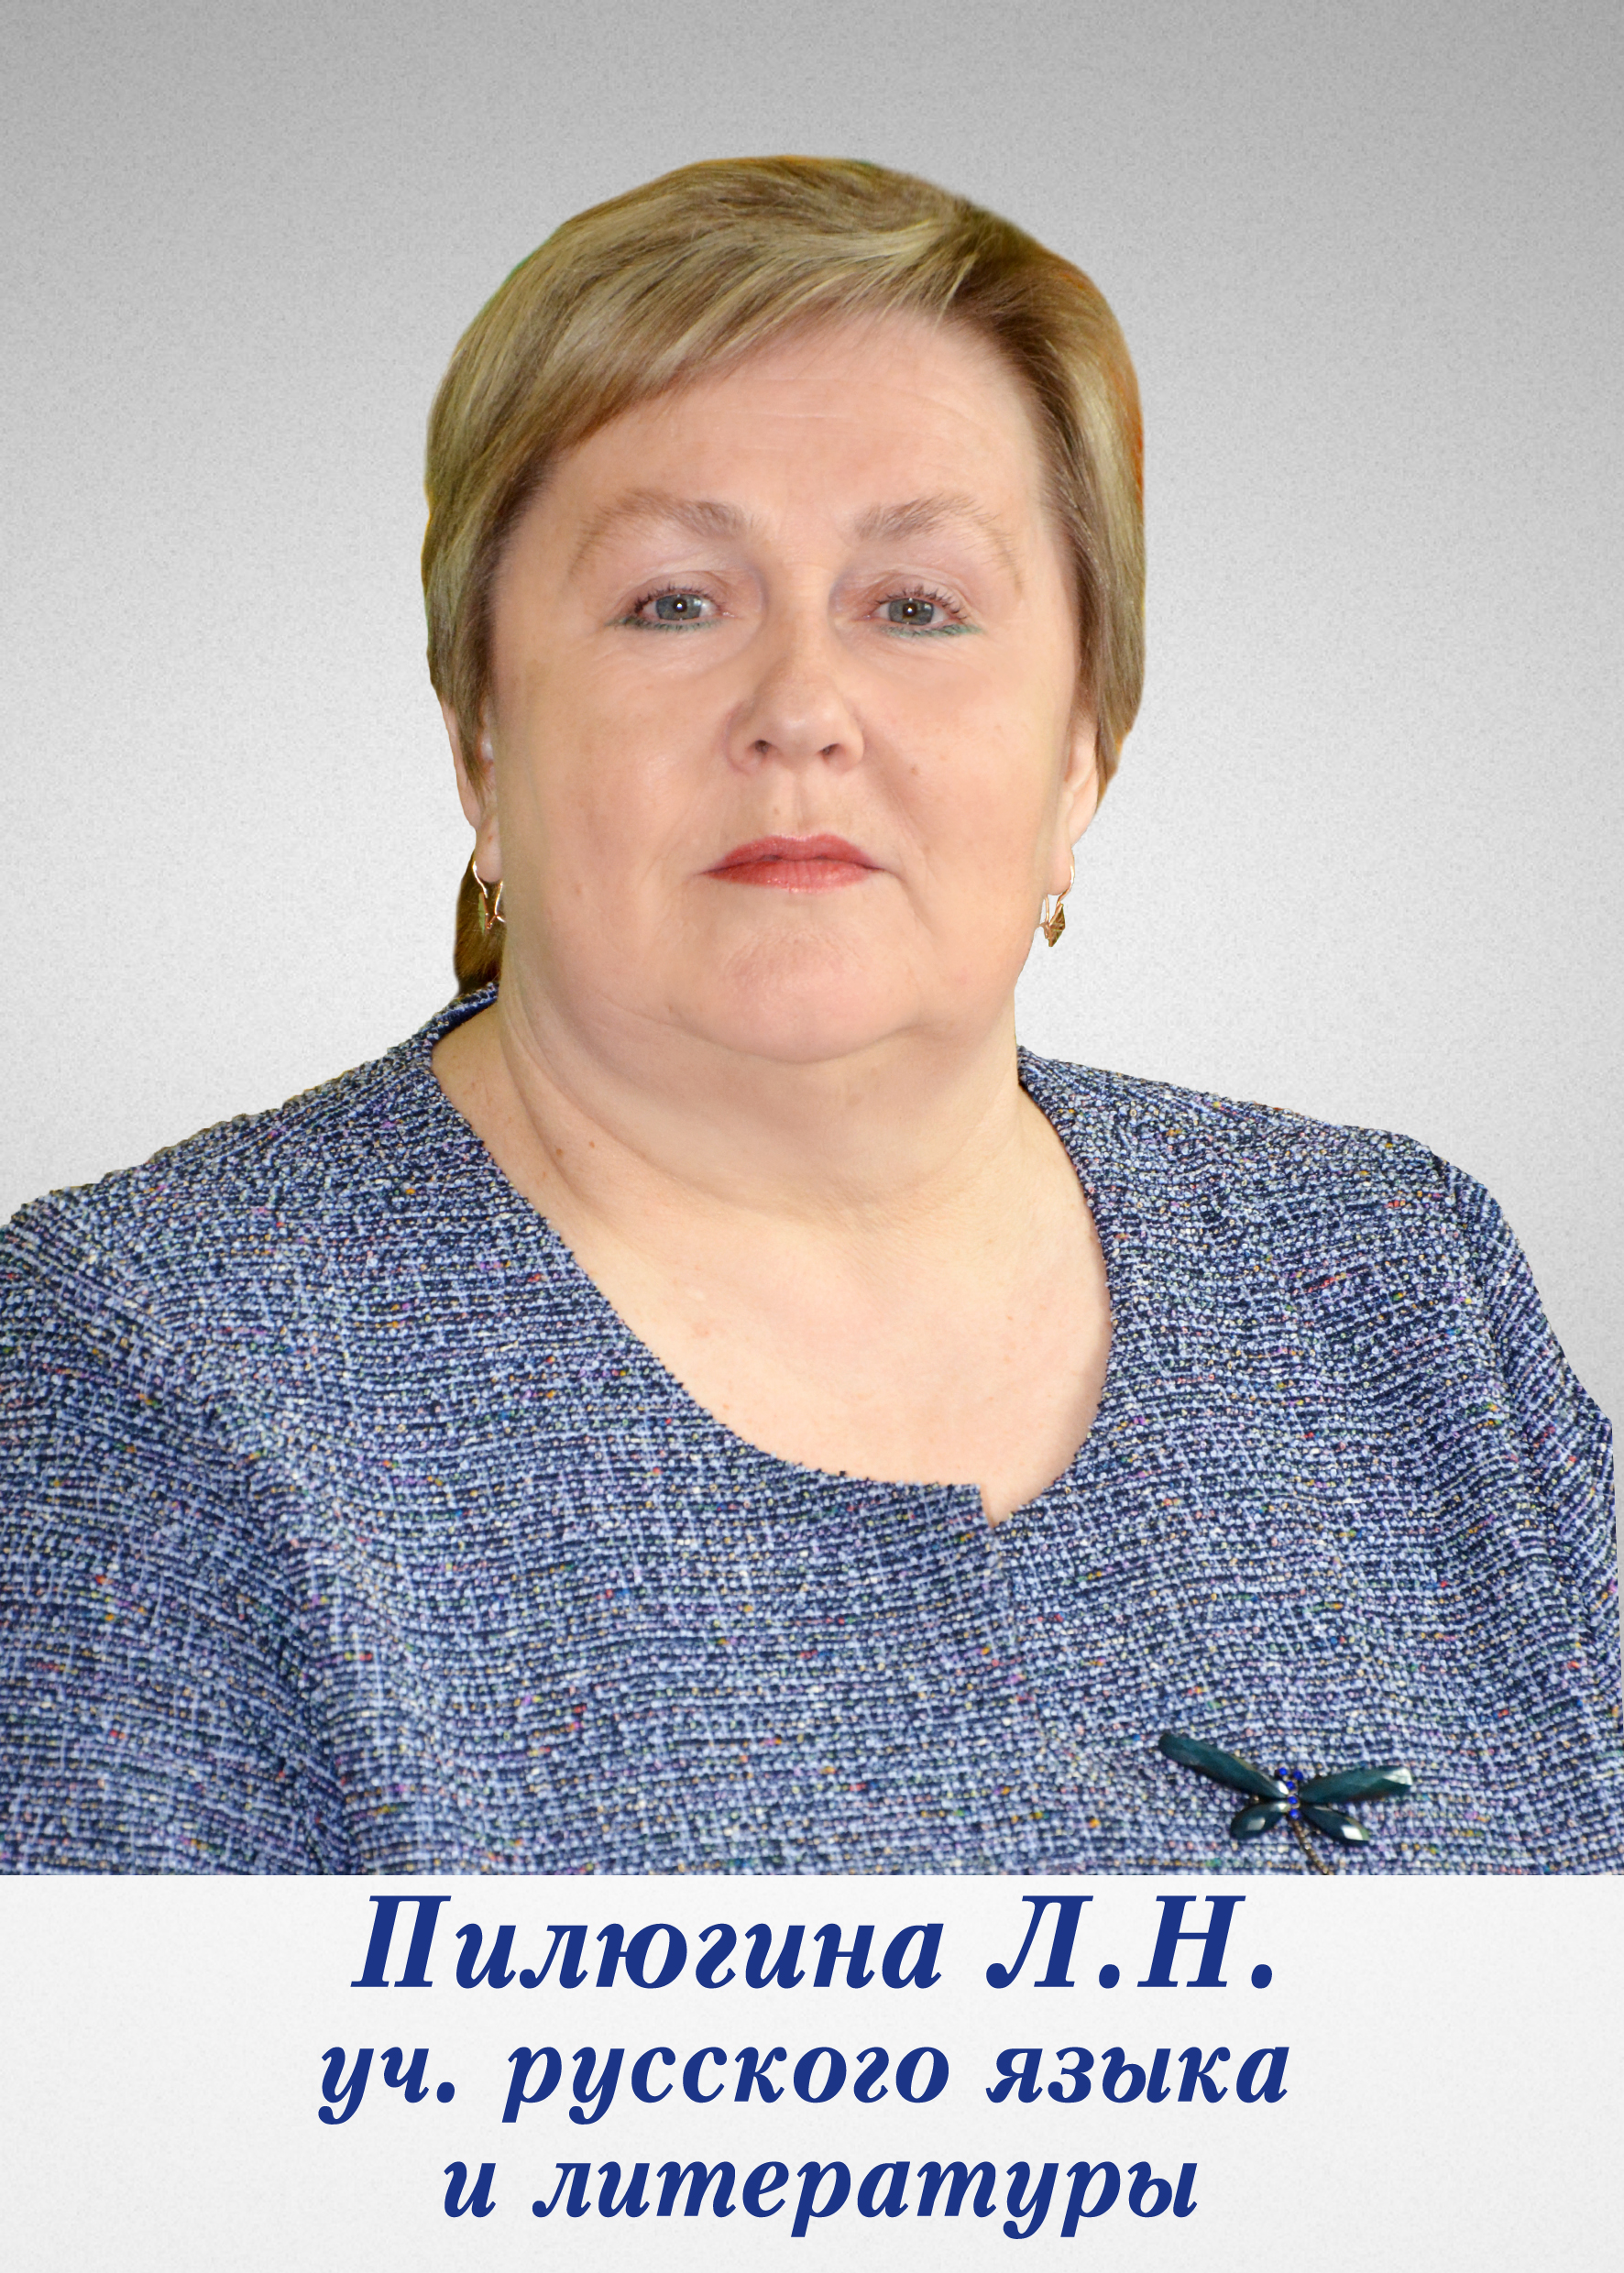 Пилюгина Людмила Николаевна.